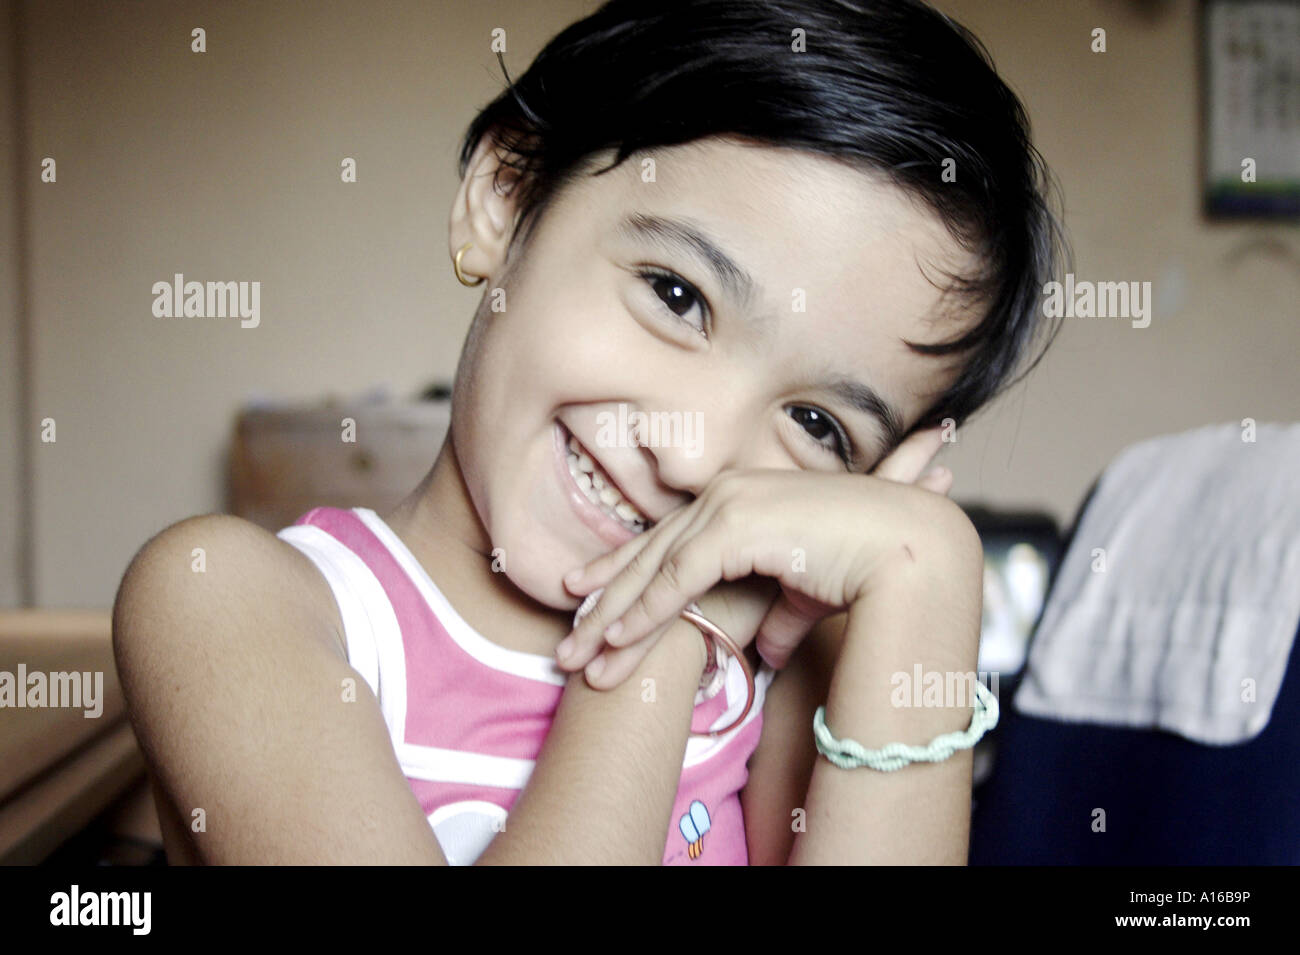 RSC102060 Young Indian little girl smiling Bombay Mumbai Maharashtra IndiaSrishti Model released 542 Stock Photo